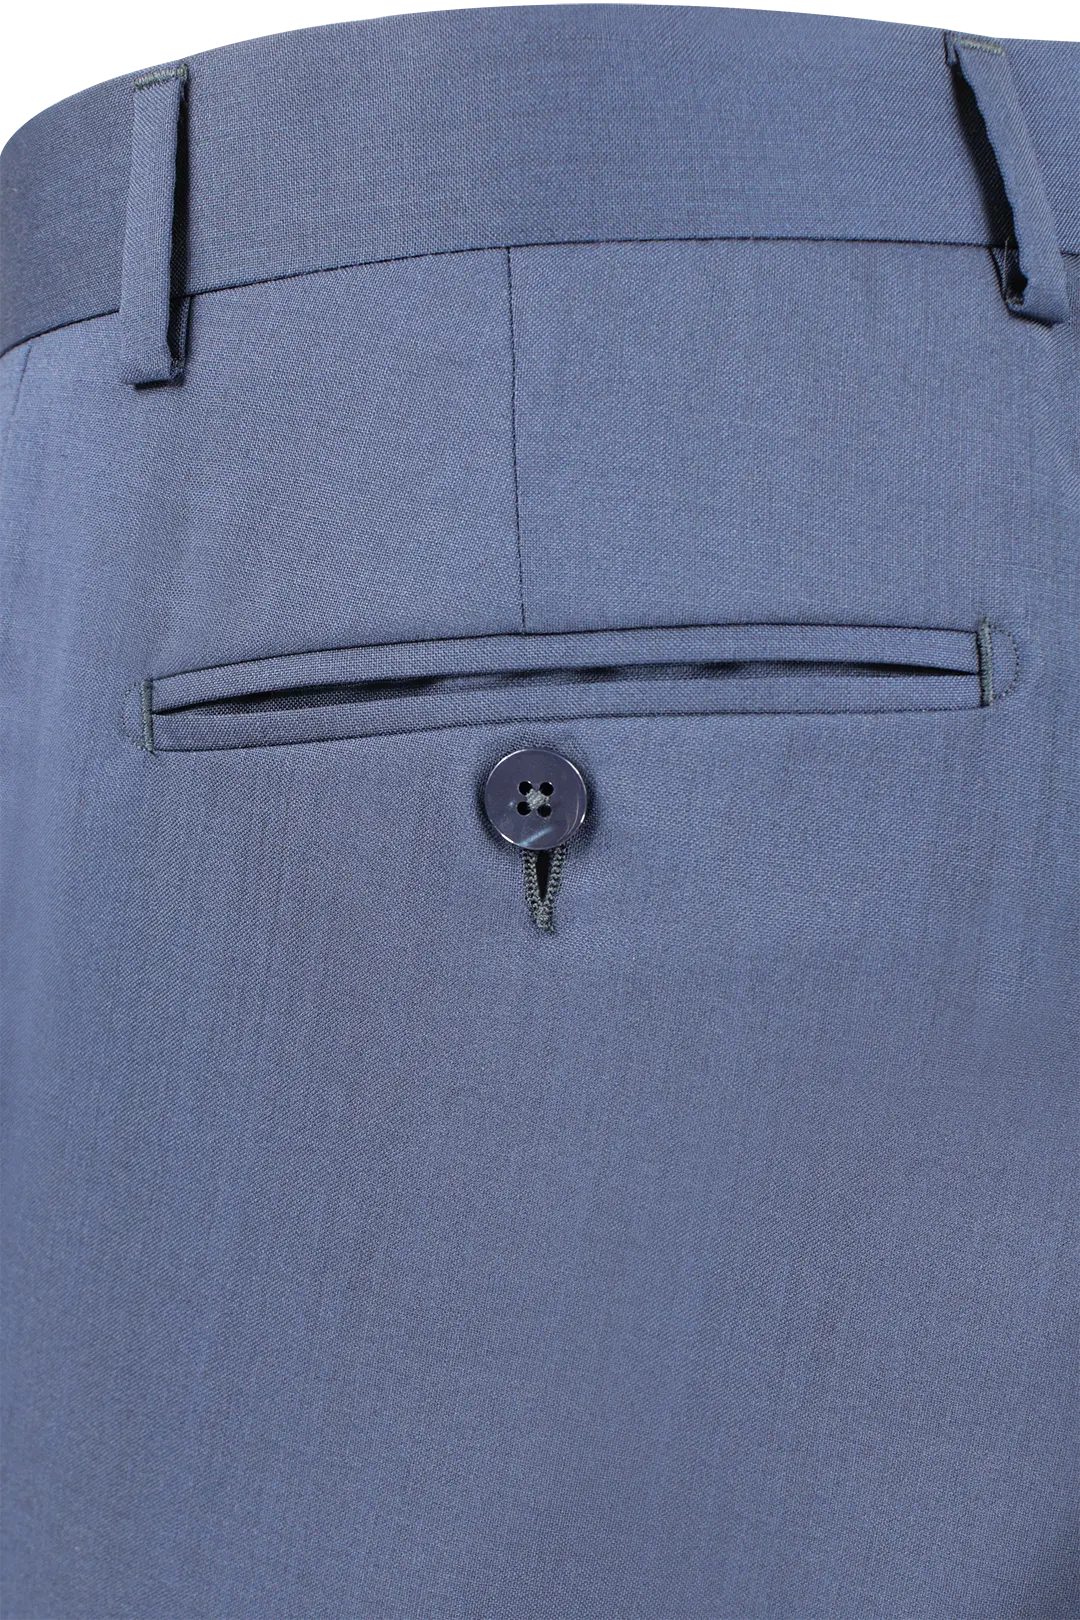 Pantalone in tela di lana vergine bluette taschino